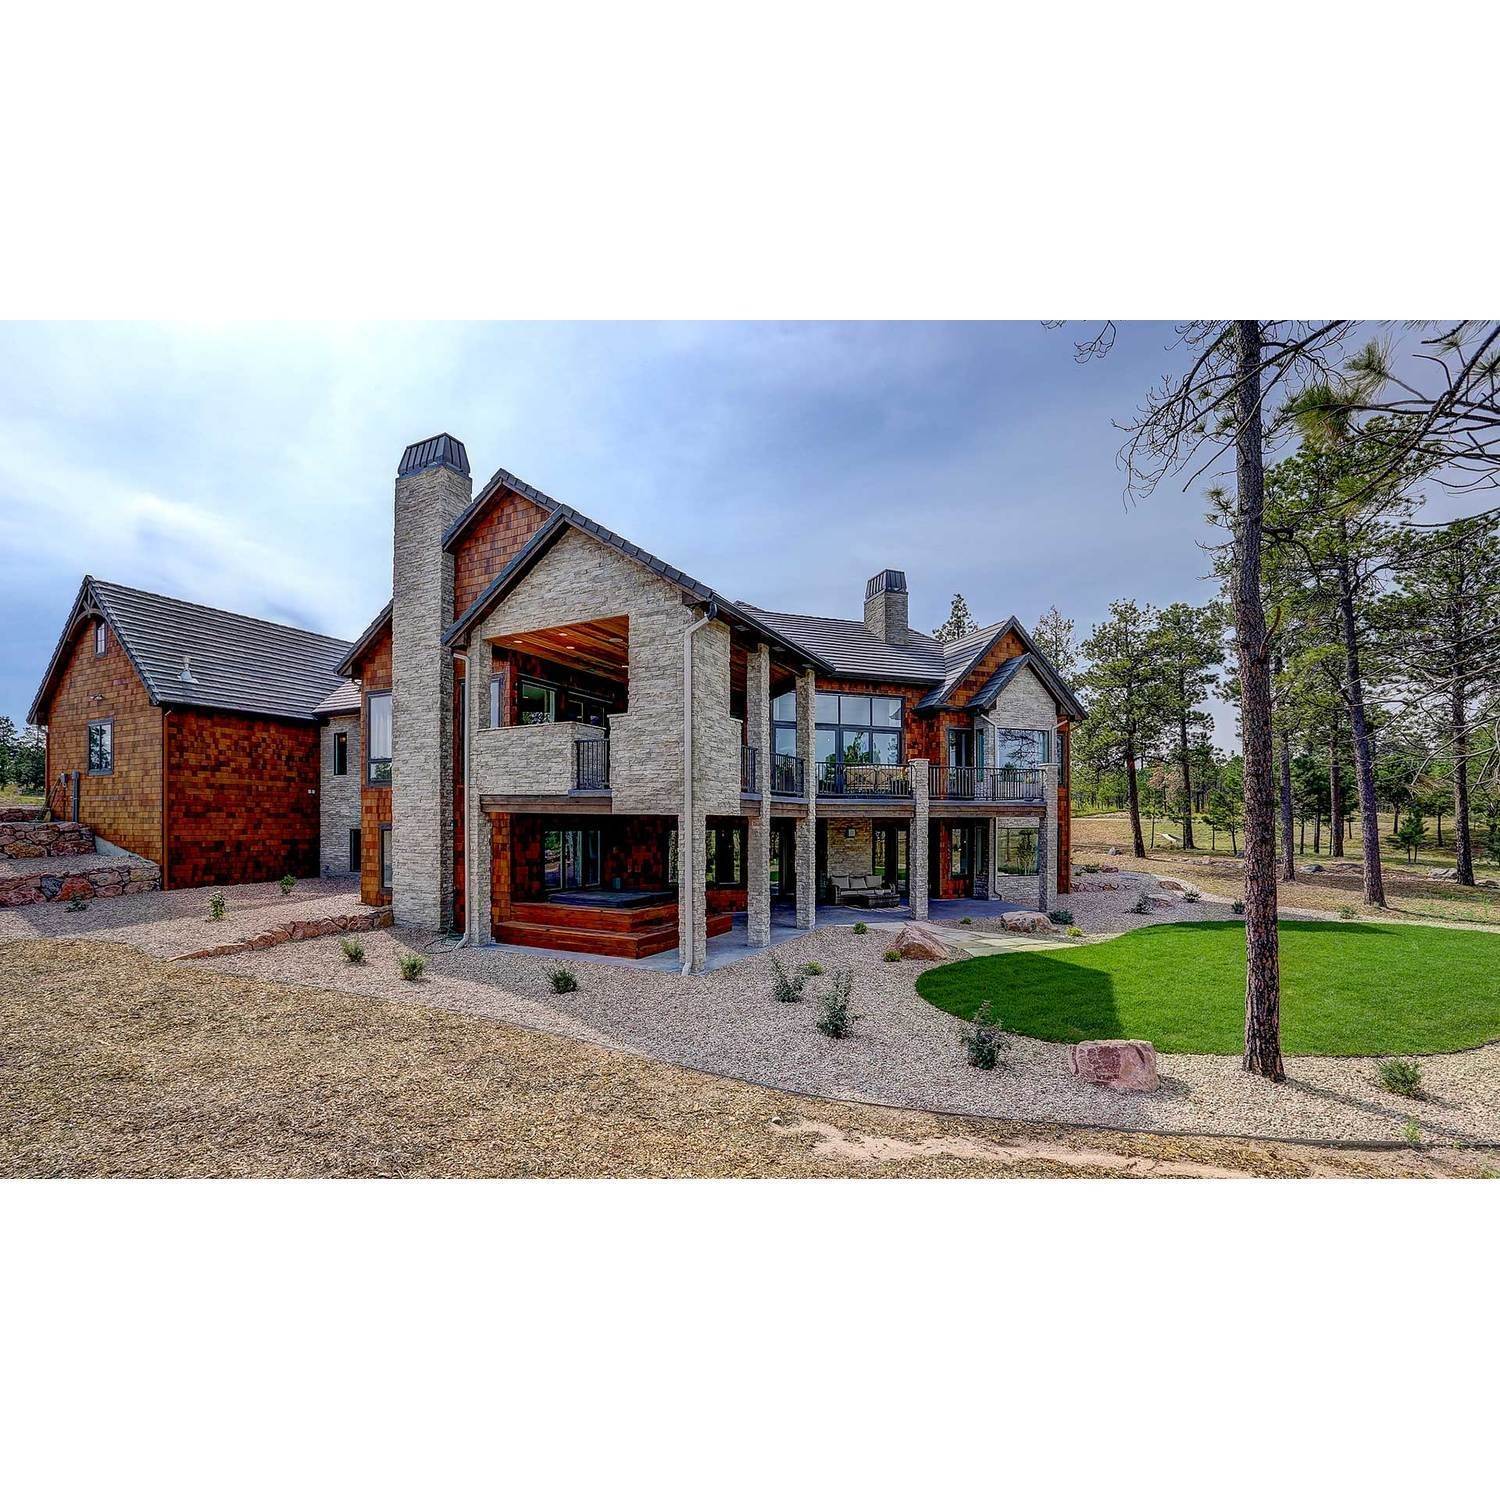 42. Galiant Homes здание в 4783 Farmingdale Dr, Colorado Springs, CO 80918